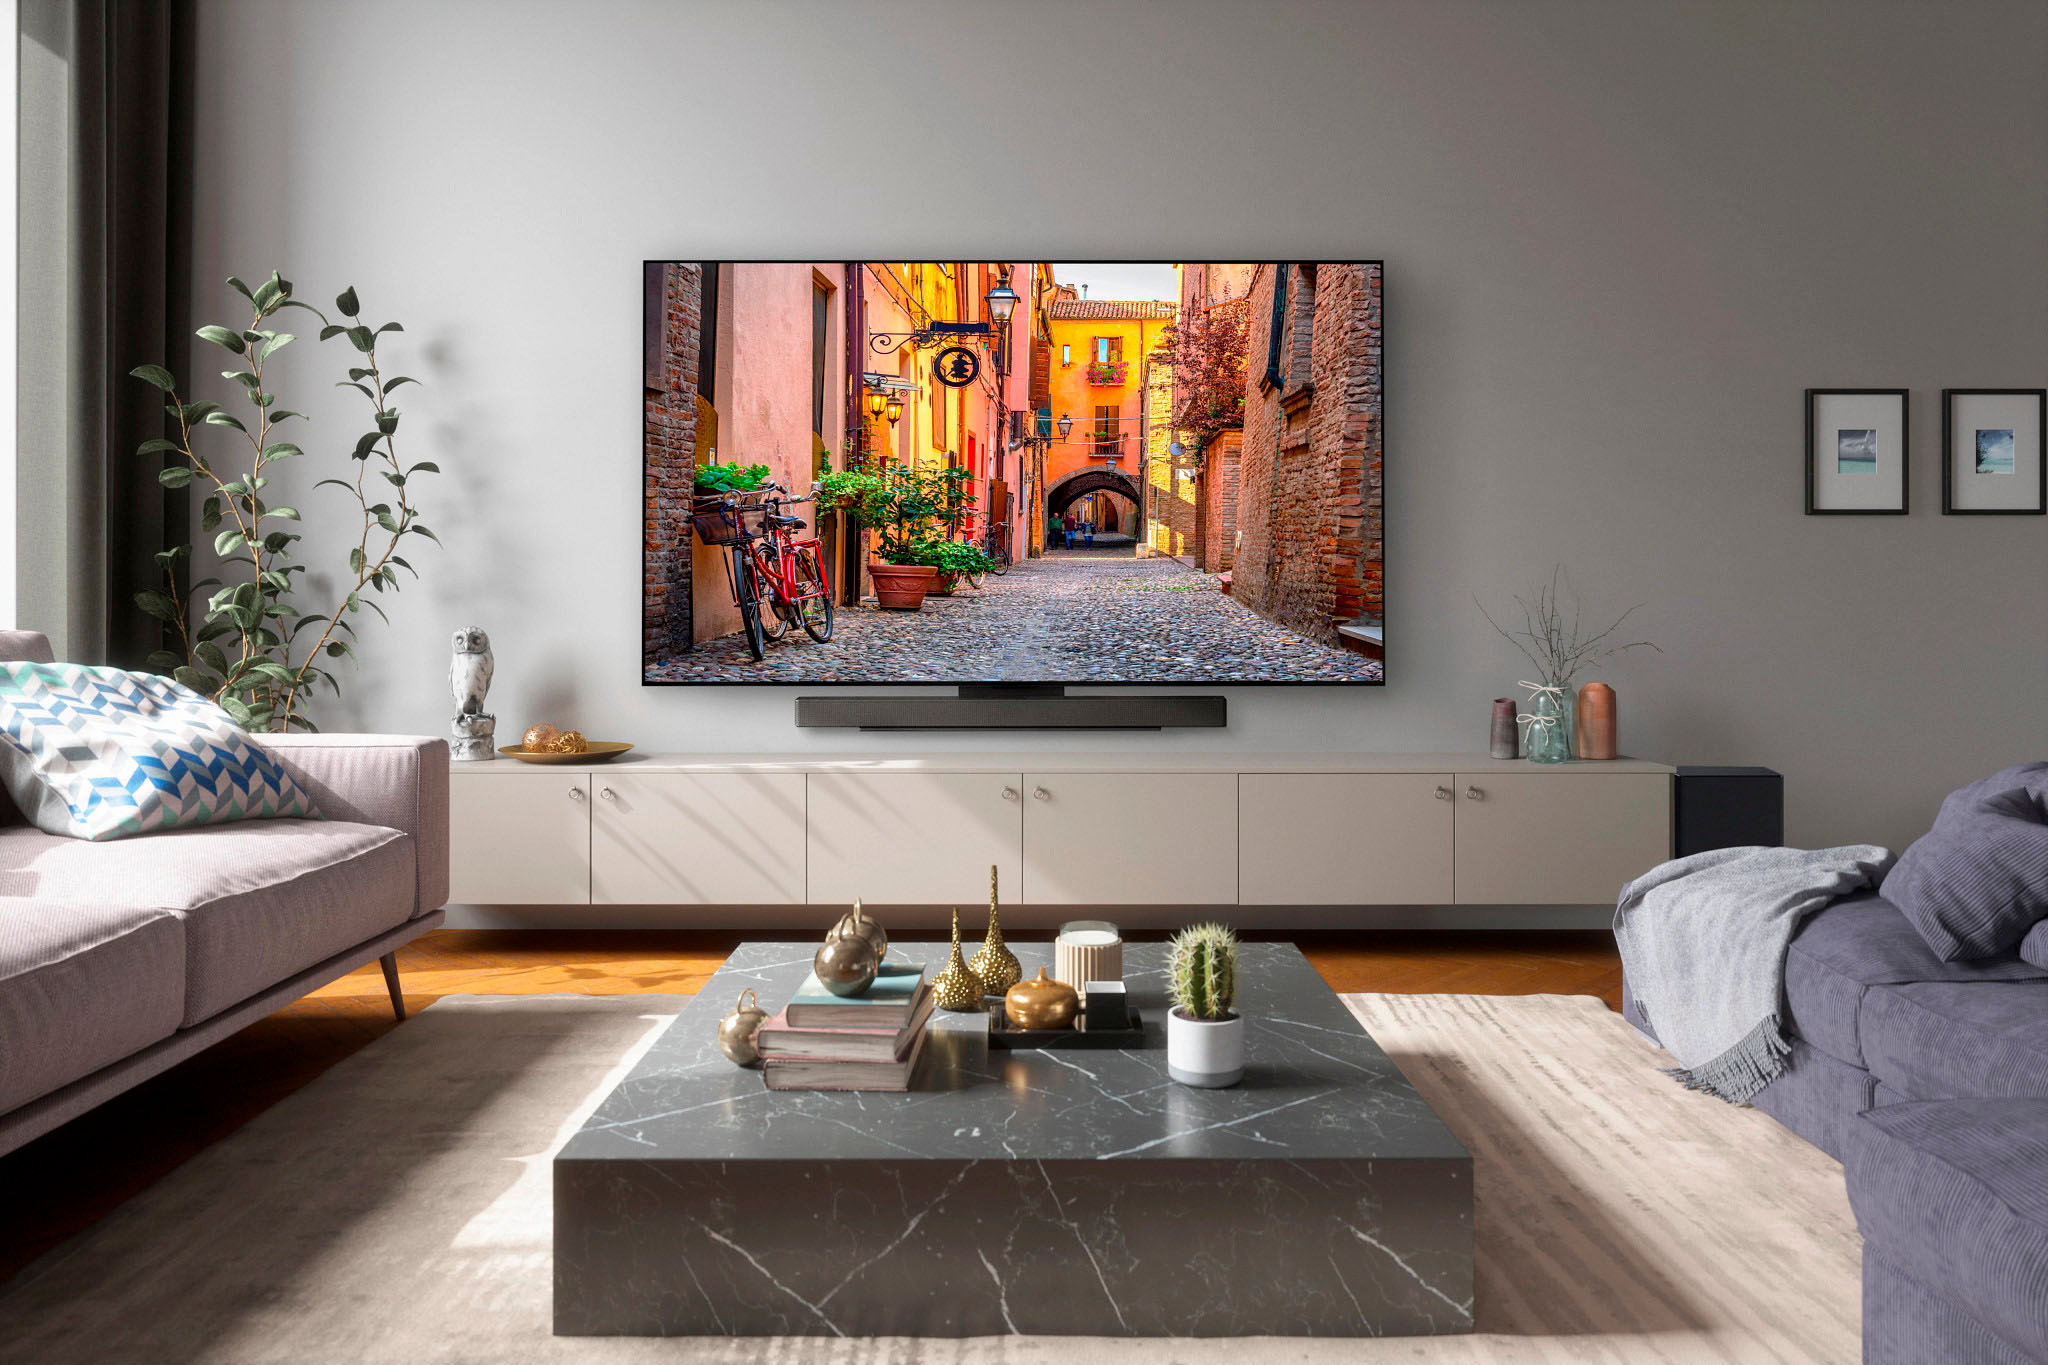 Pantalla LG OLED evo 55'' C3 4K SMART TV con ThinQ AI